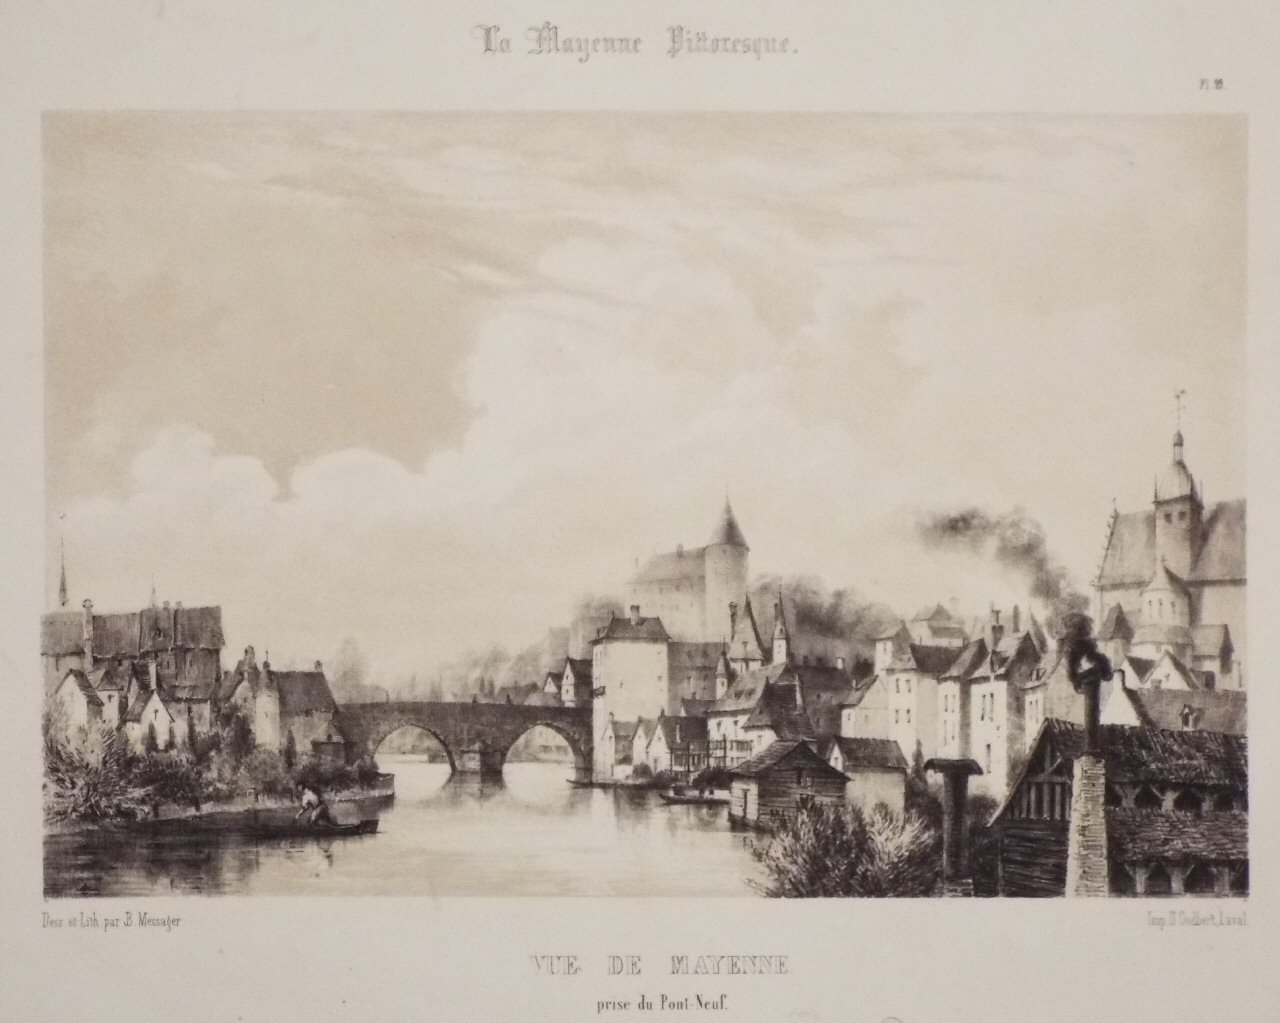 Lithograph - Vue de Mayenne prise du Pont-Neuf. - Messager